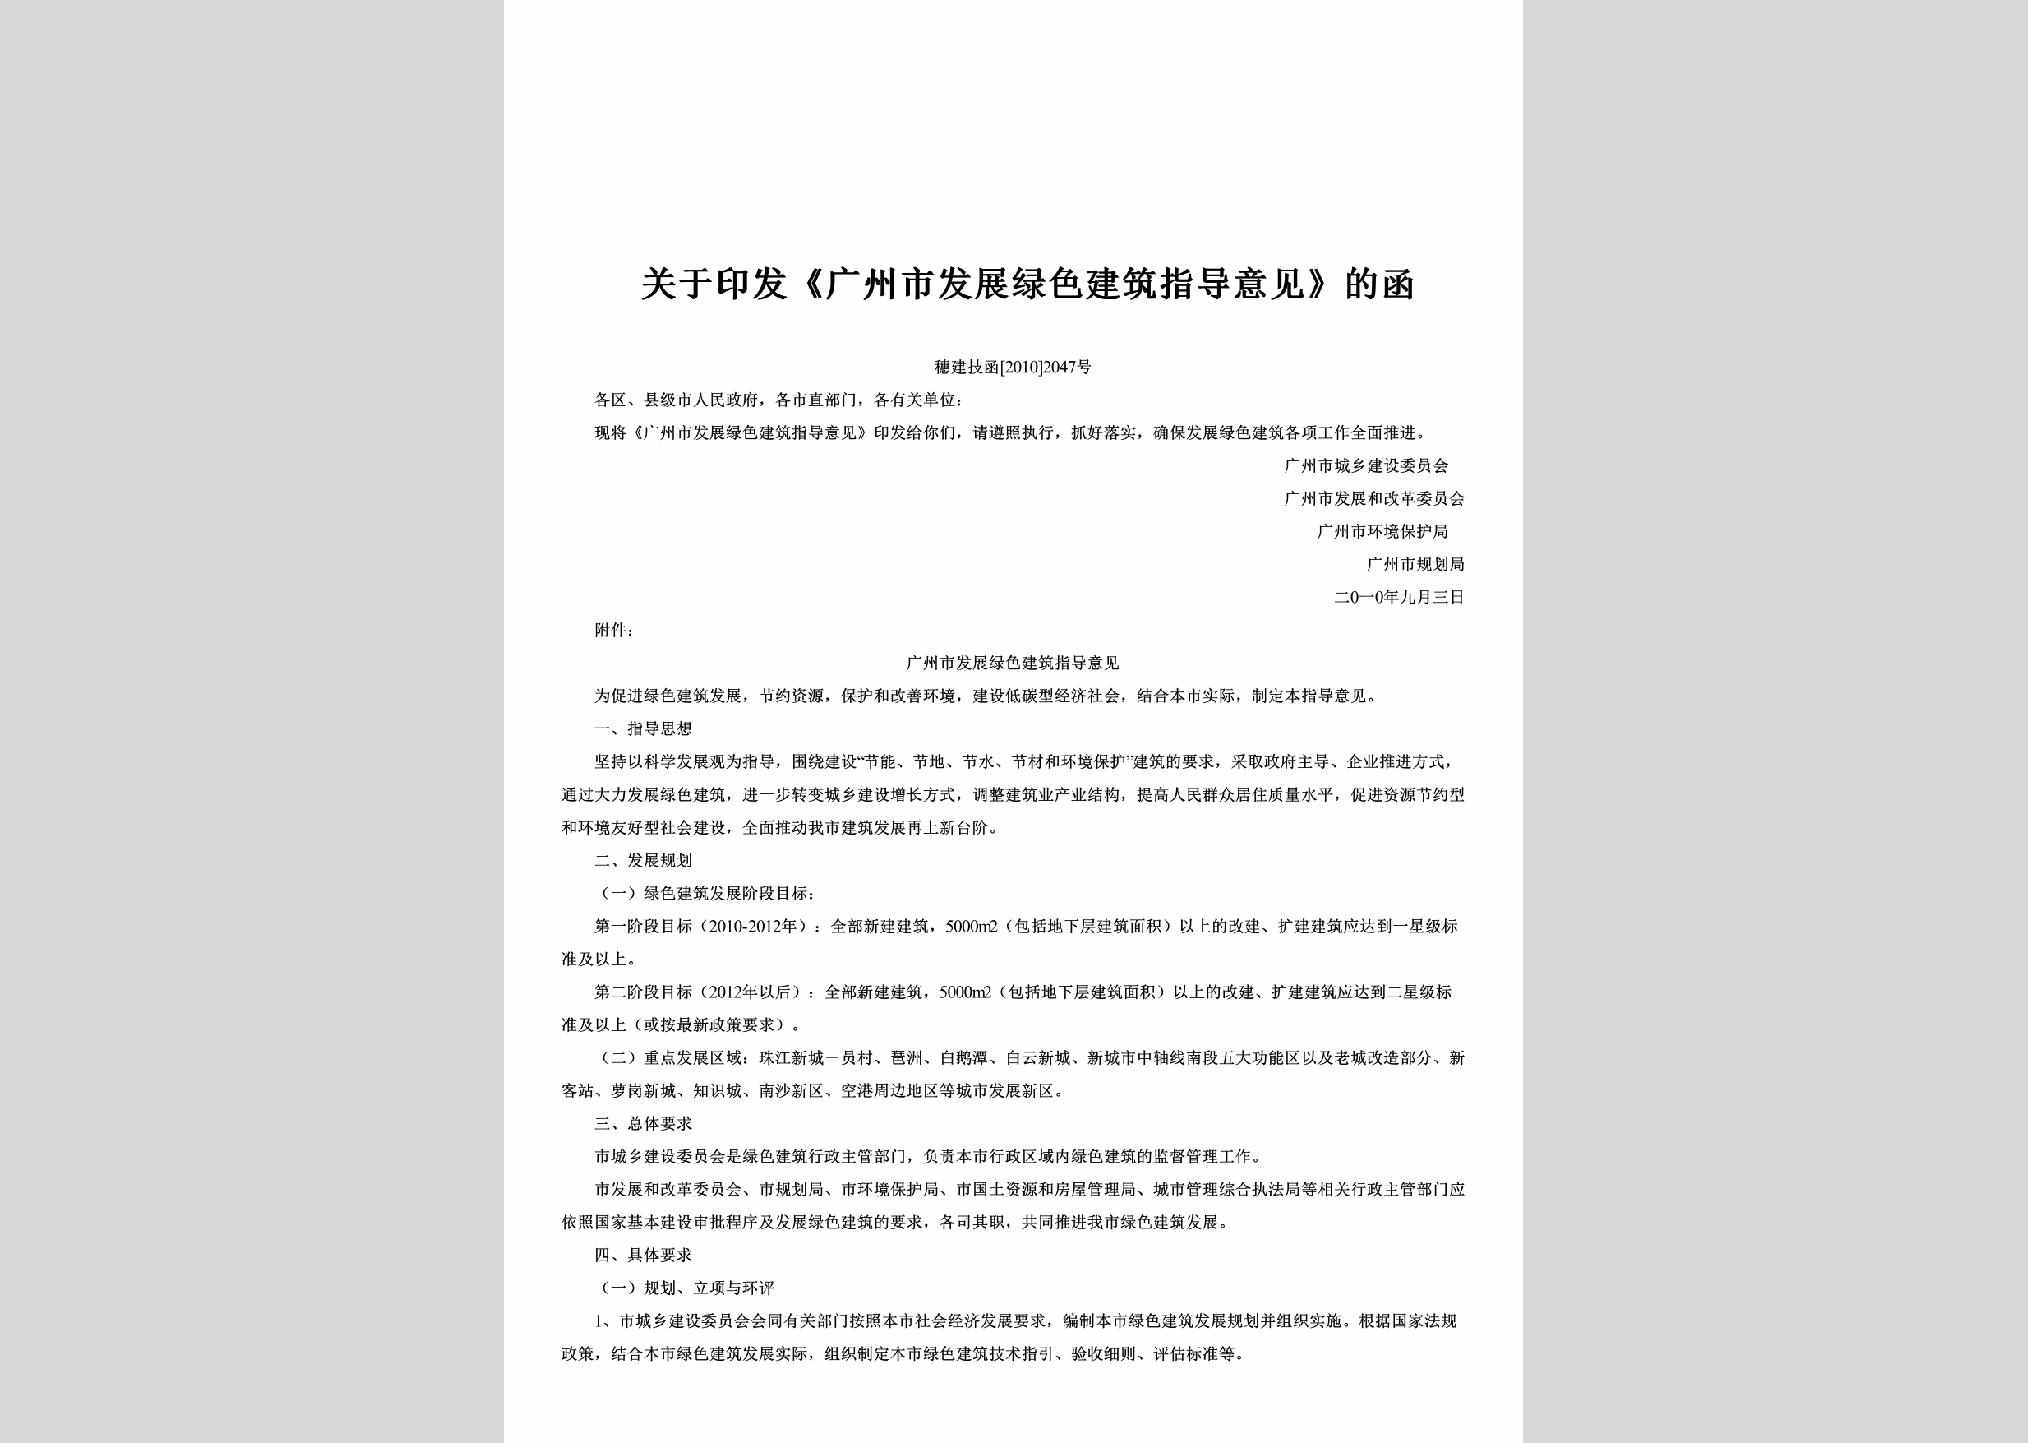 穗建技函[2010]2047号：关于印发《广州市发展绿色建筑指导意见》的函